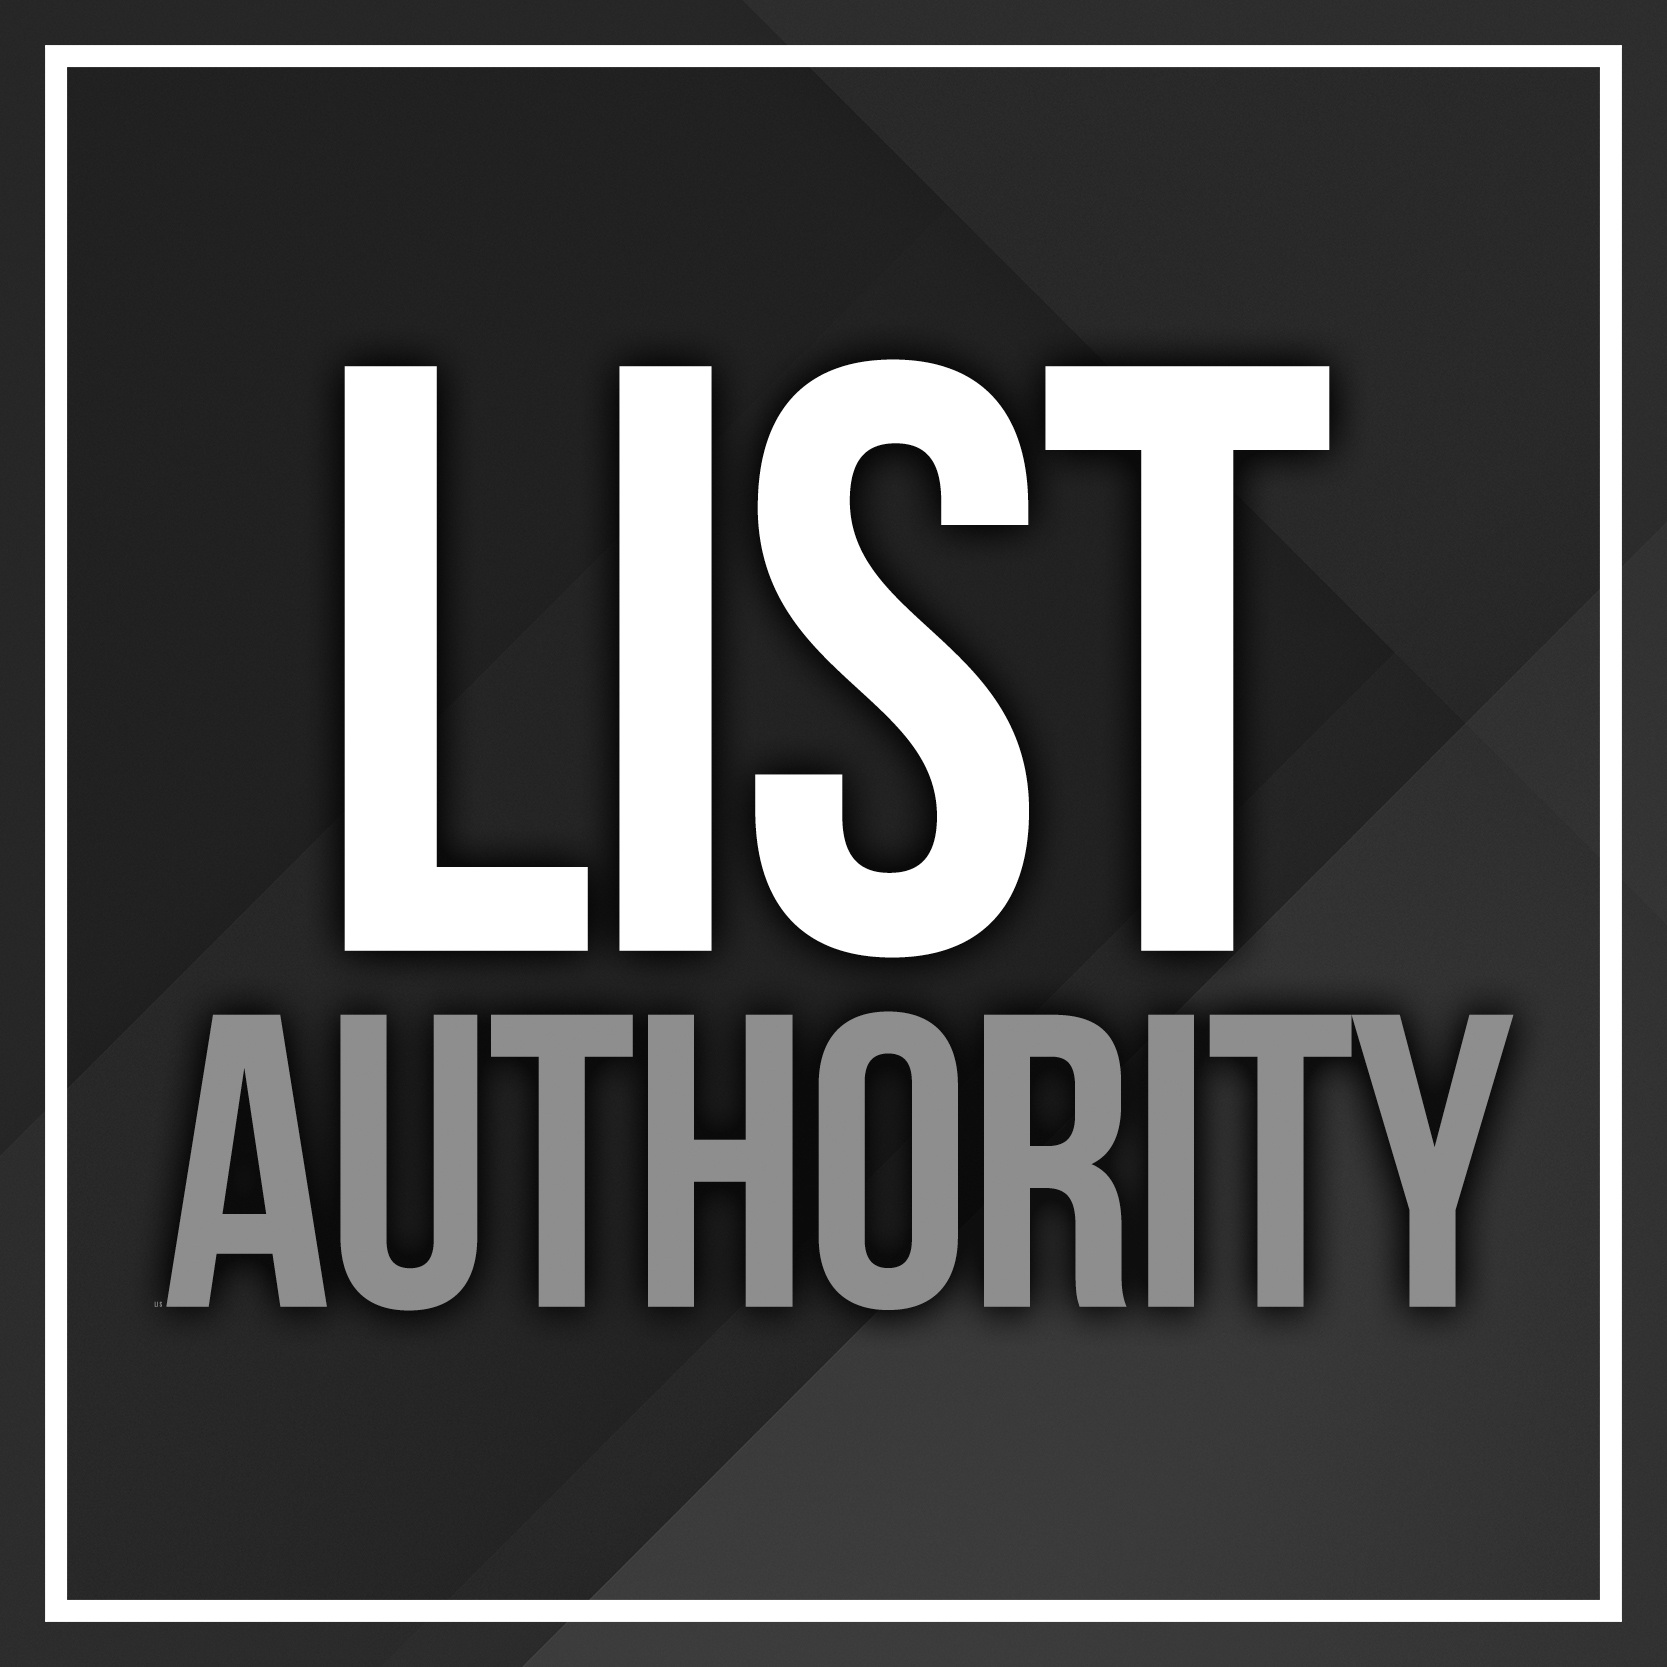 List Authority